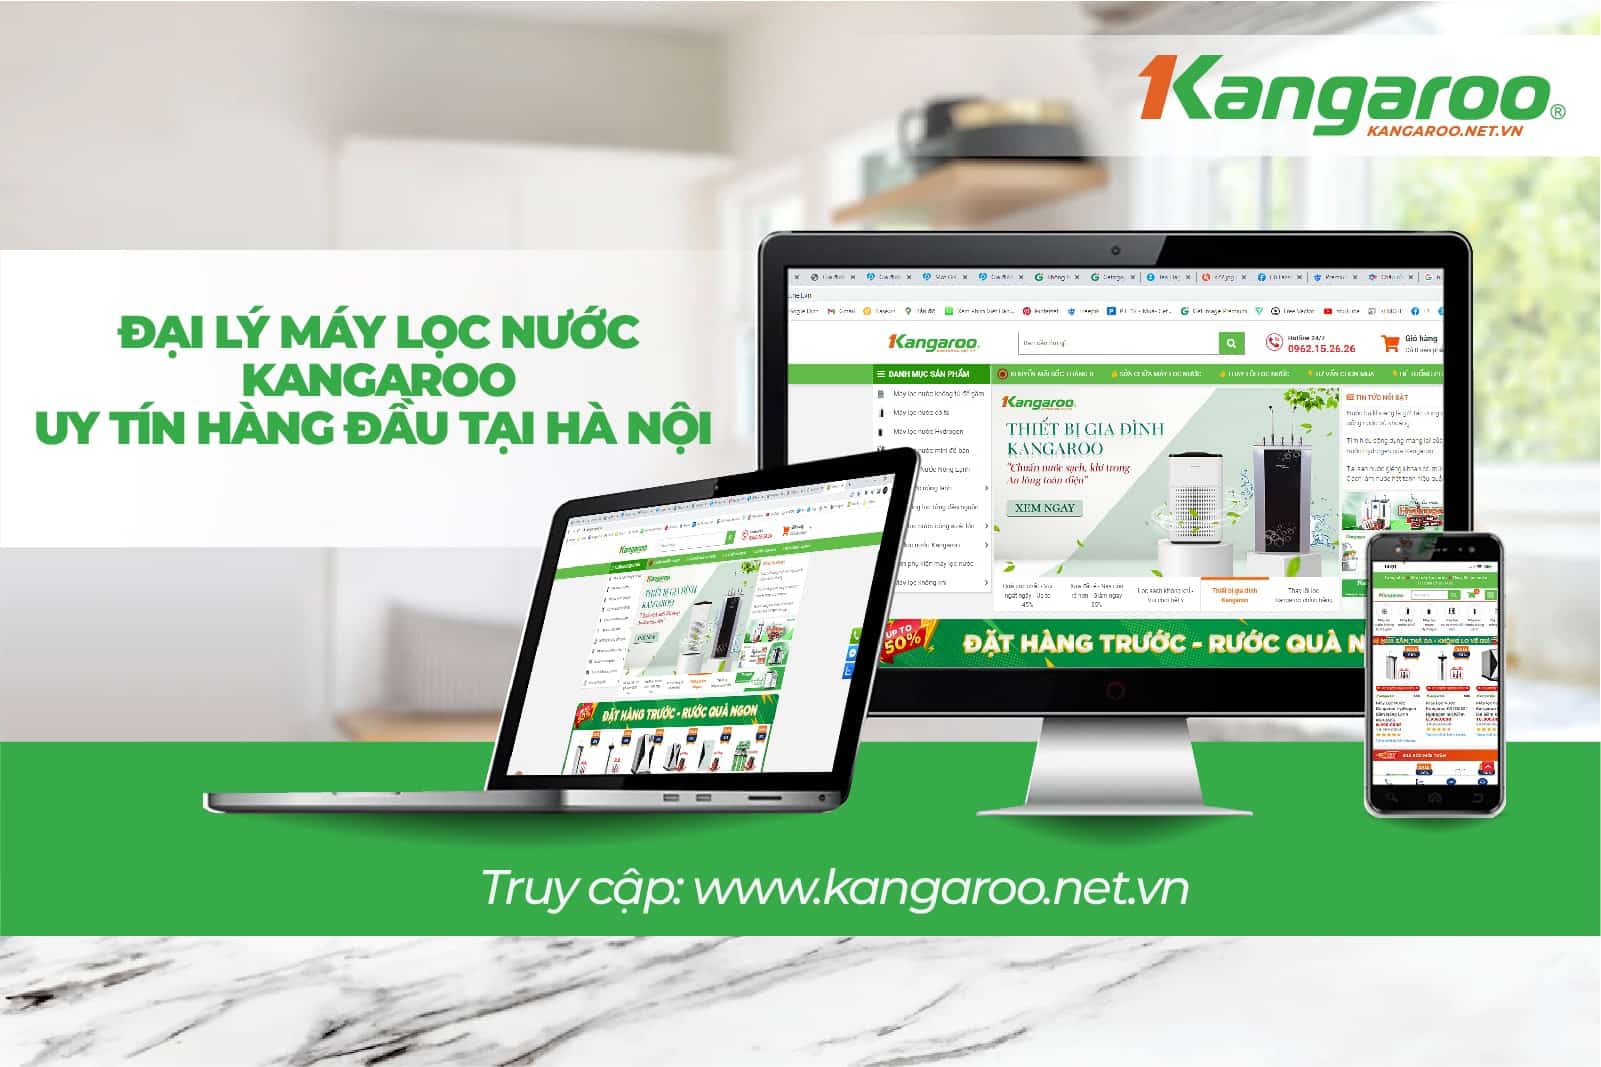 Kangaroo.net.vn - Địa chỉ bán máy lọc nước Kangaroo chính hãng giá tốt nhất